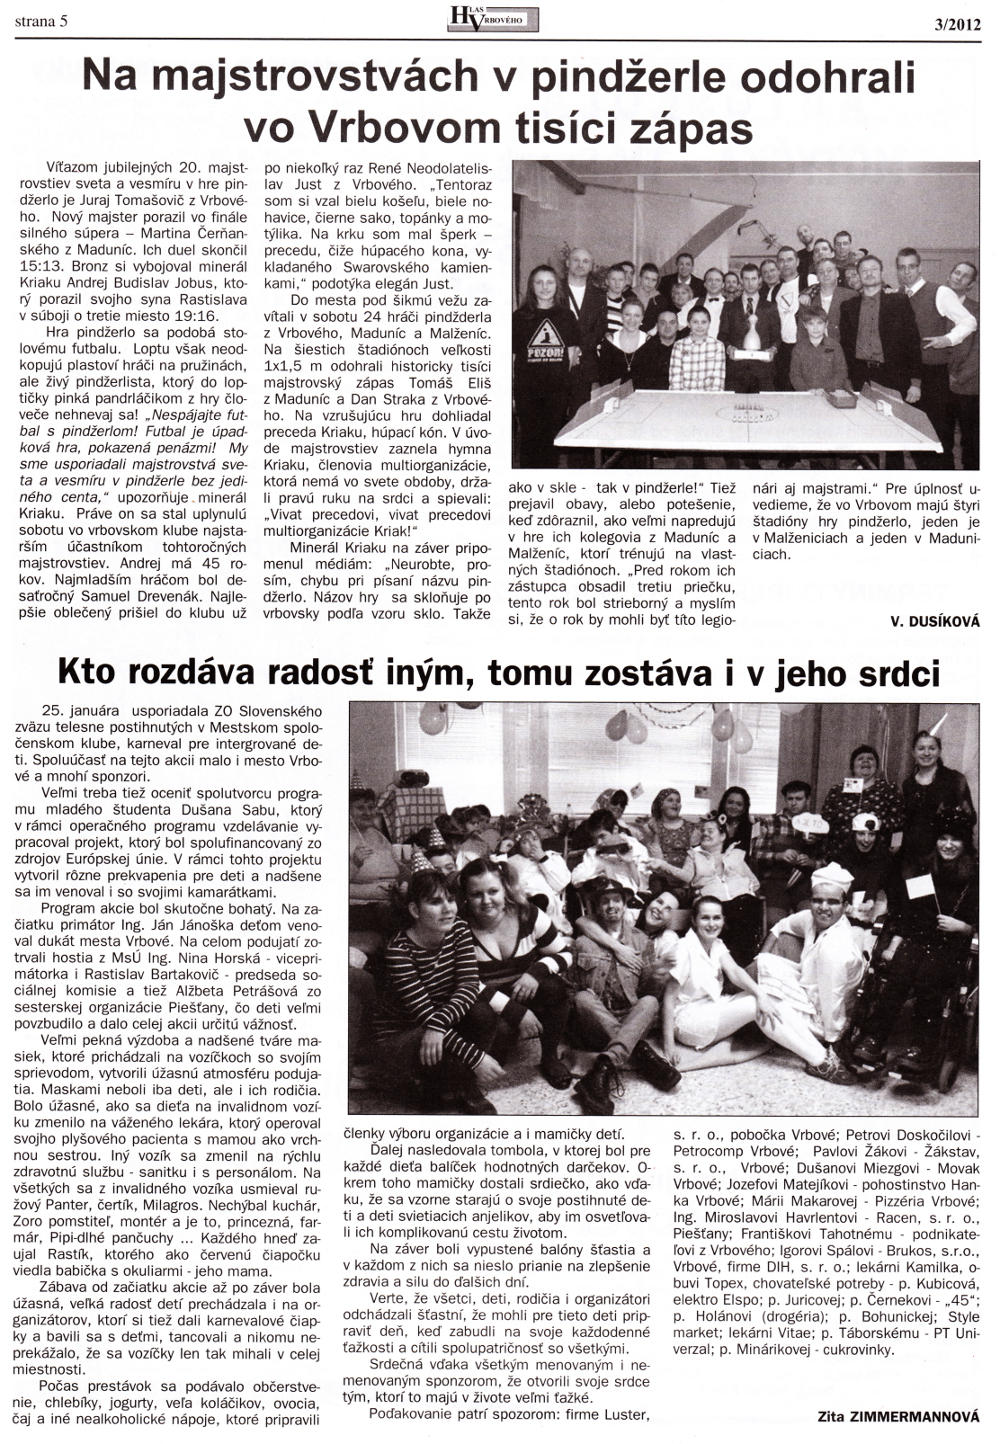 Hlas Vrbového 03/2012, strana 5